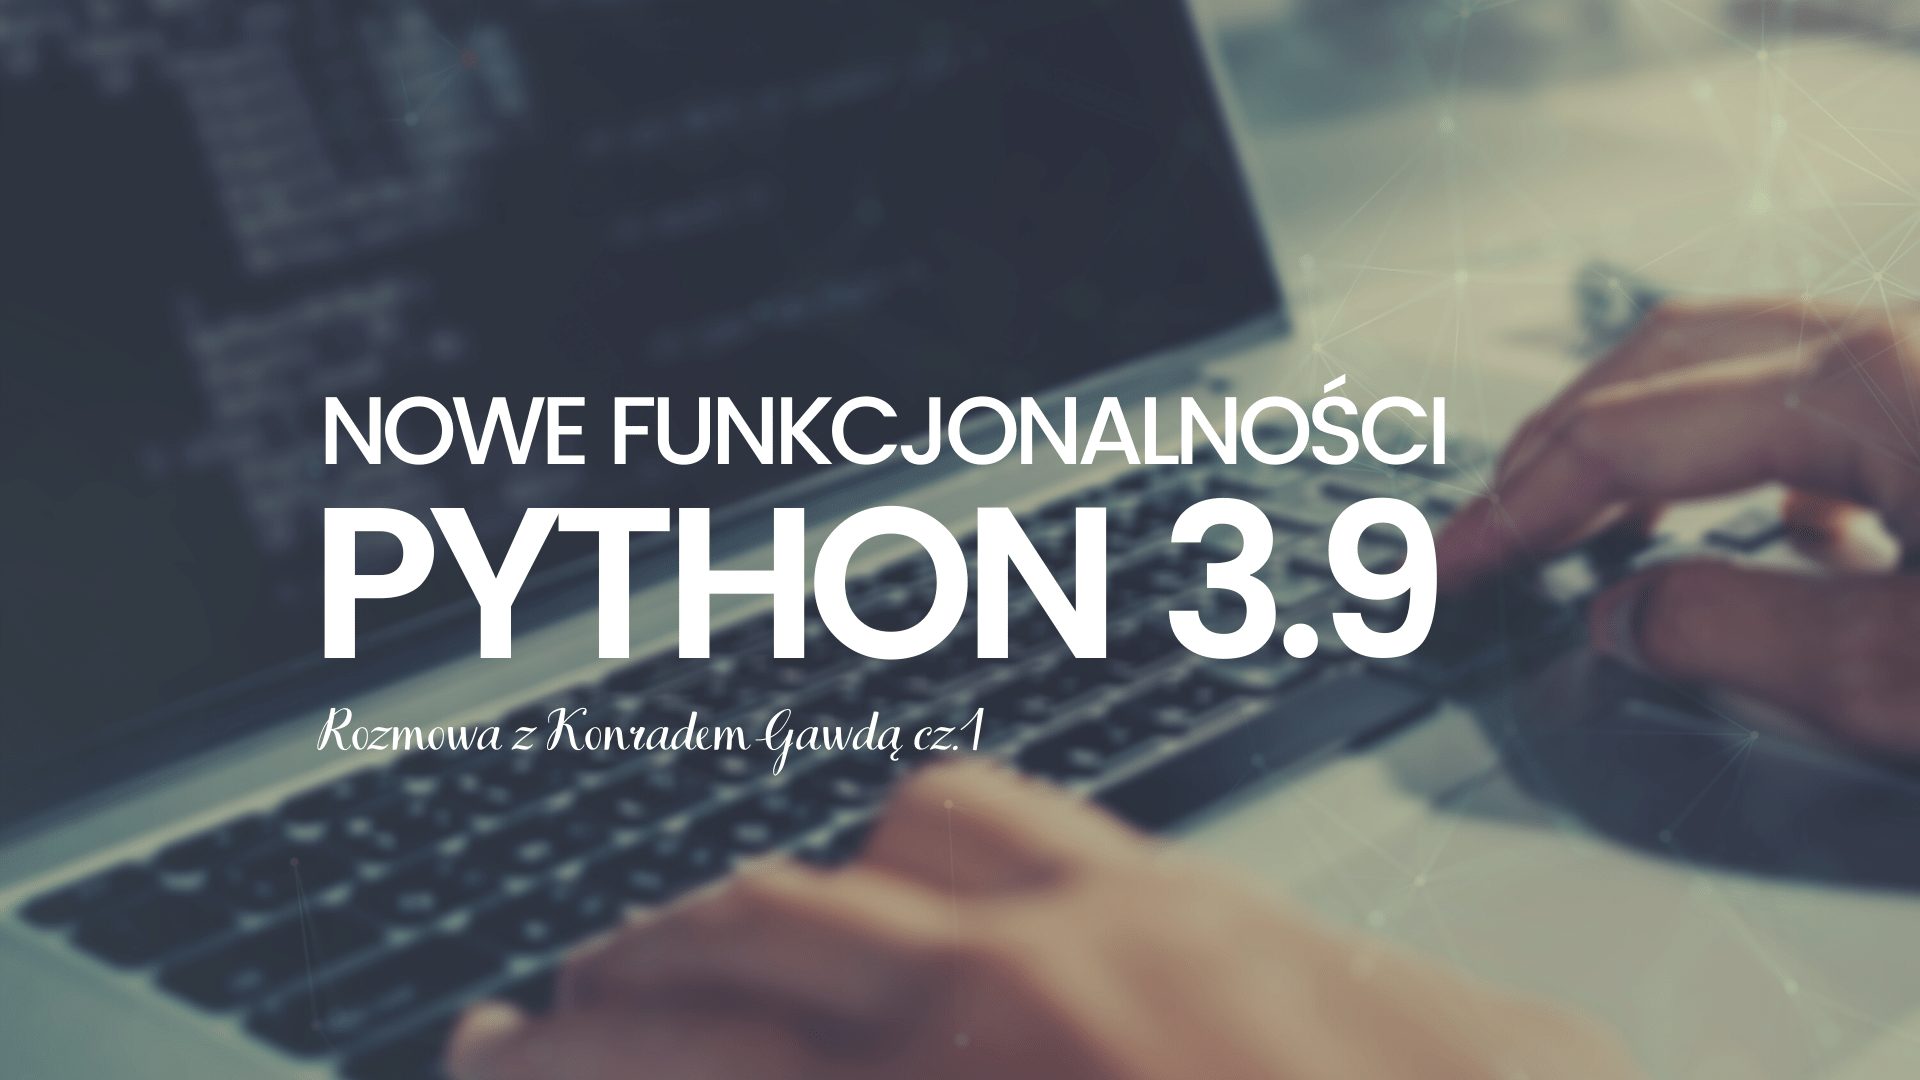 Nowe funkcjonalności Python 3.9. Rozmowa z Konradem Gawdą